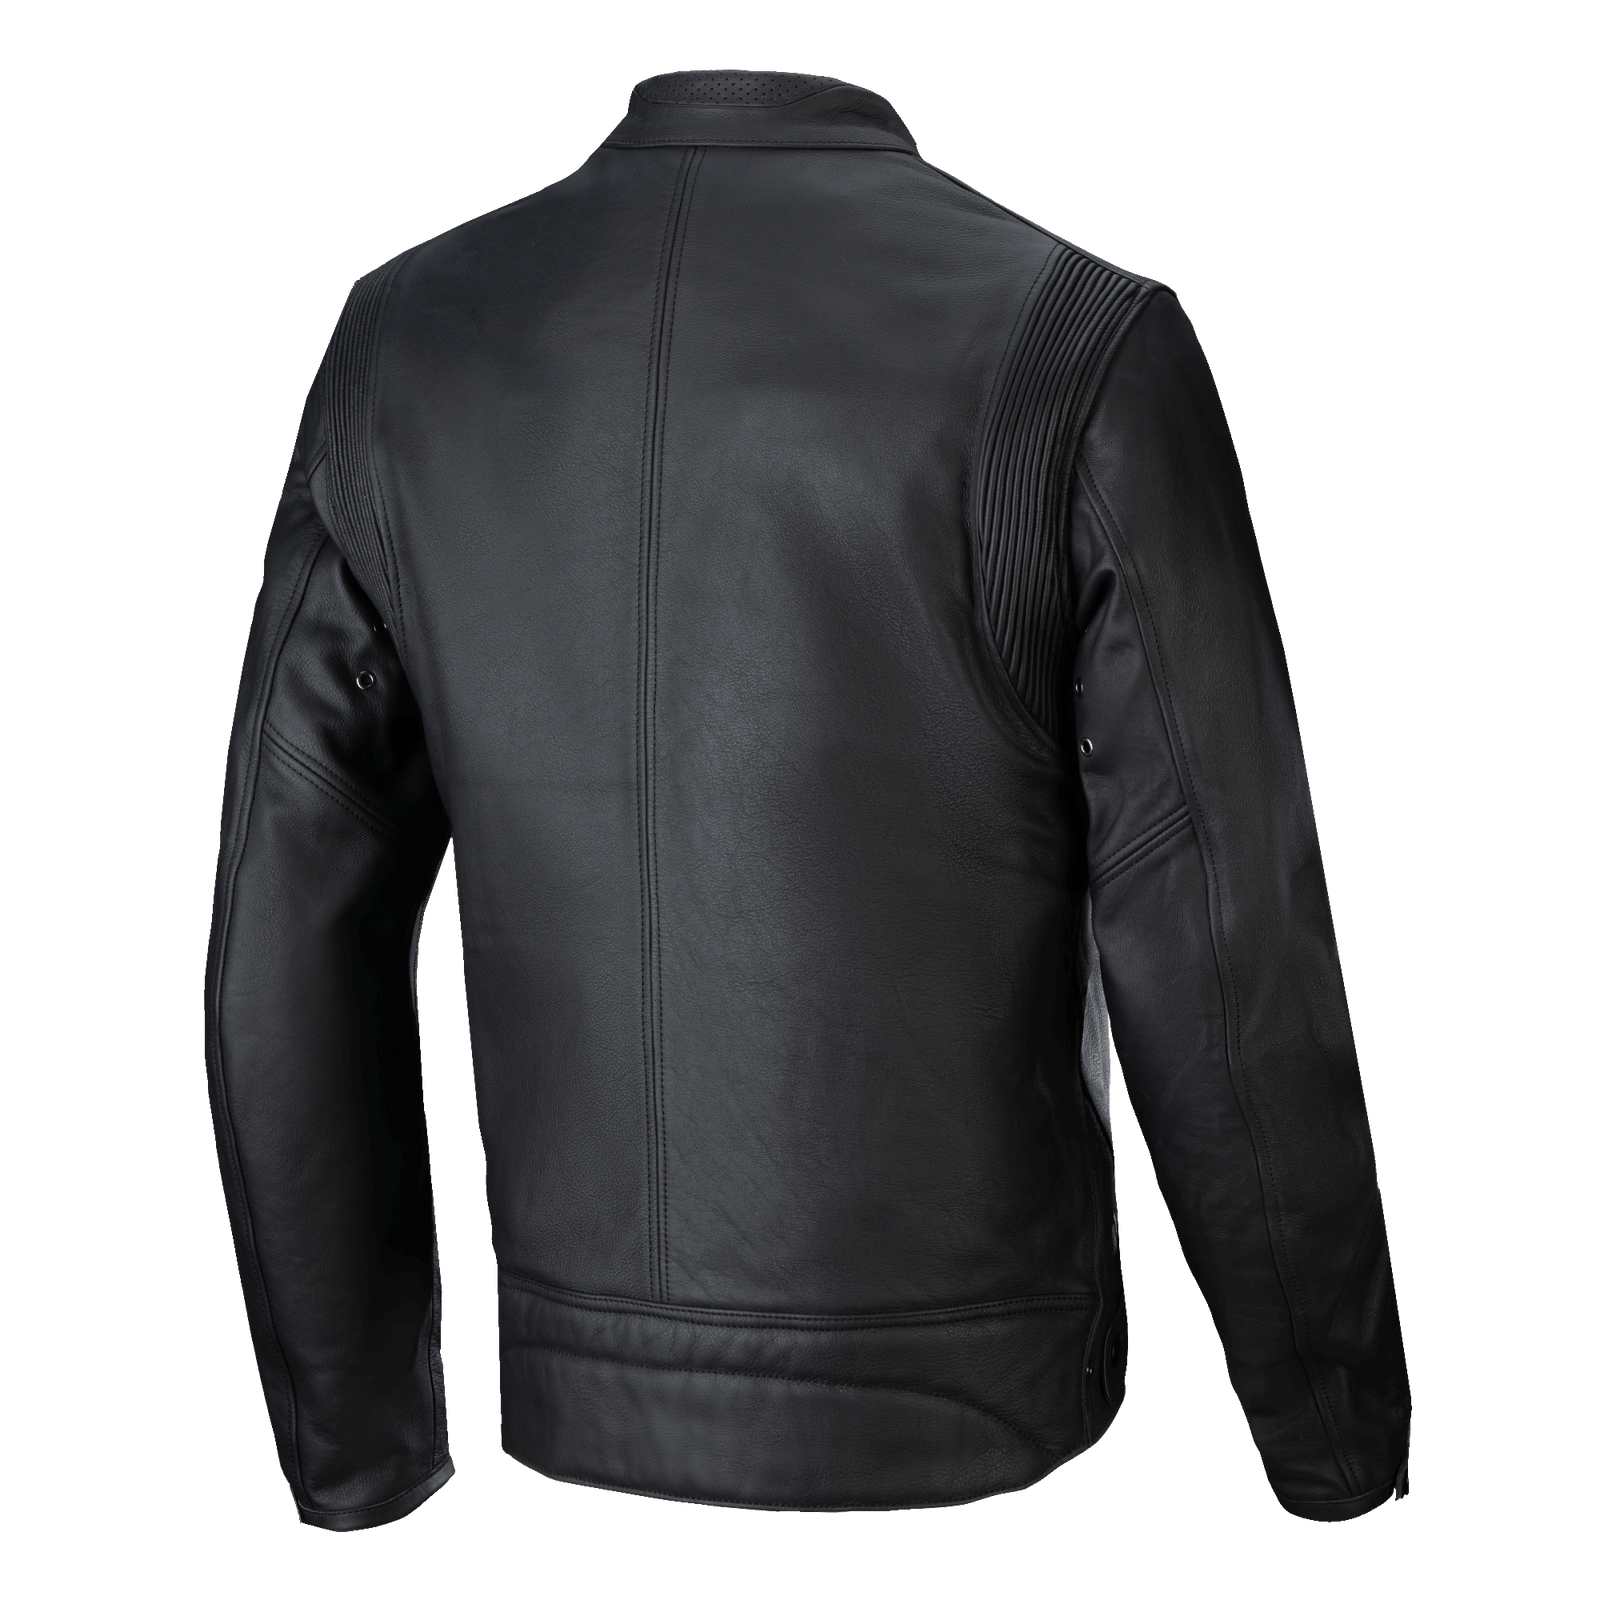 Spidi Original Enduro Motorcycle Mesh Jacket Black